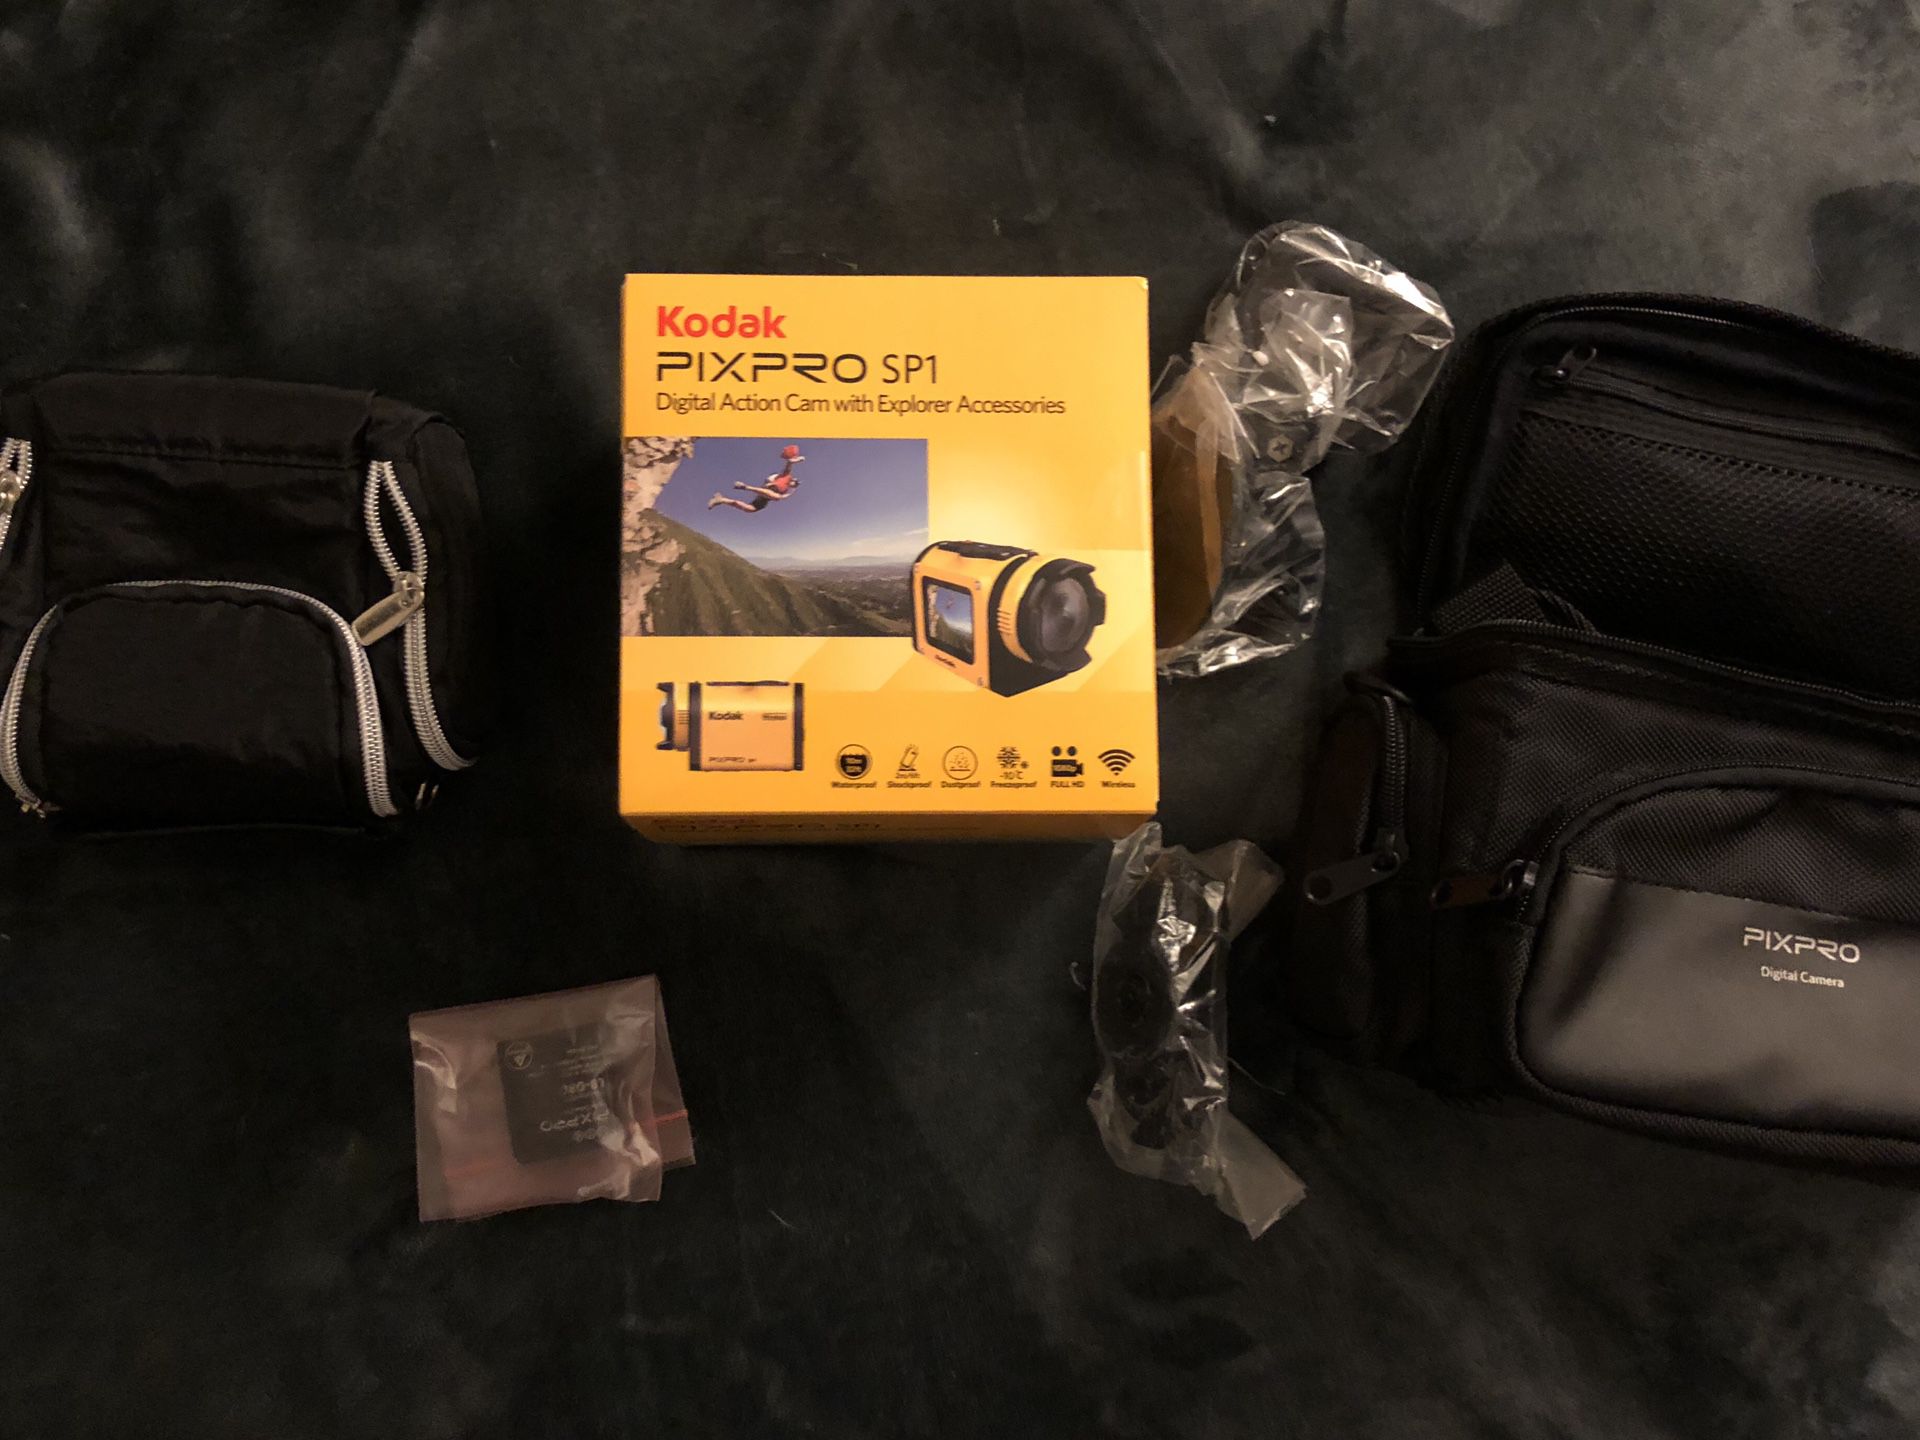 New PIXPRO SP1 Kodak action film camera